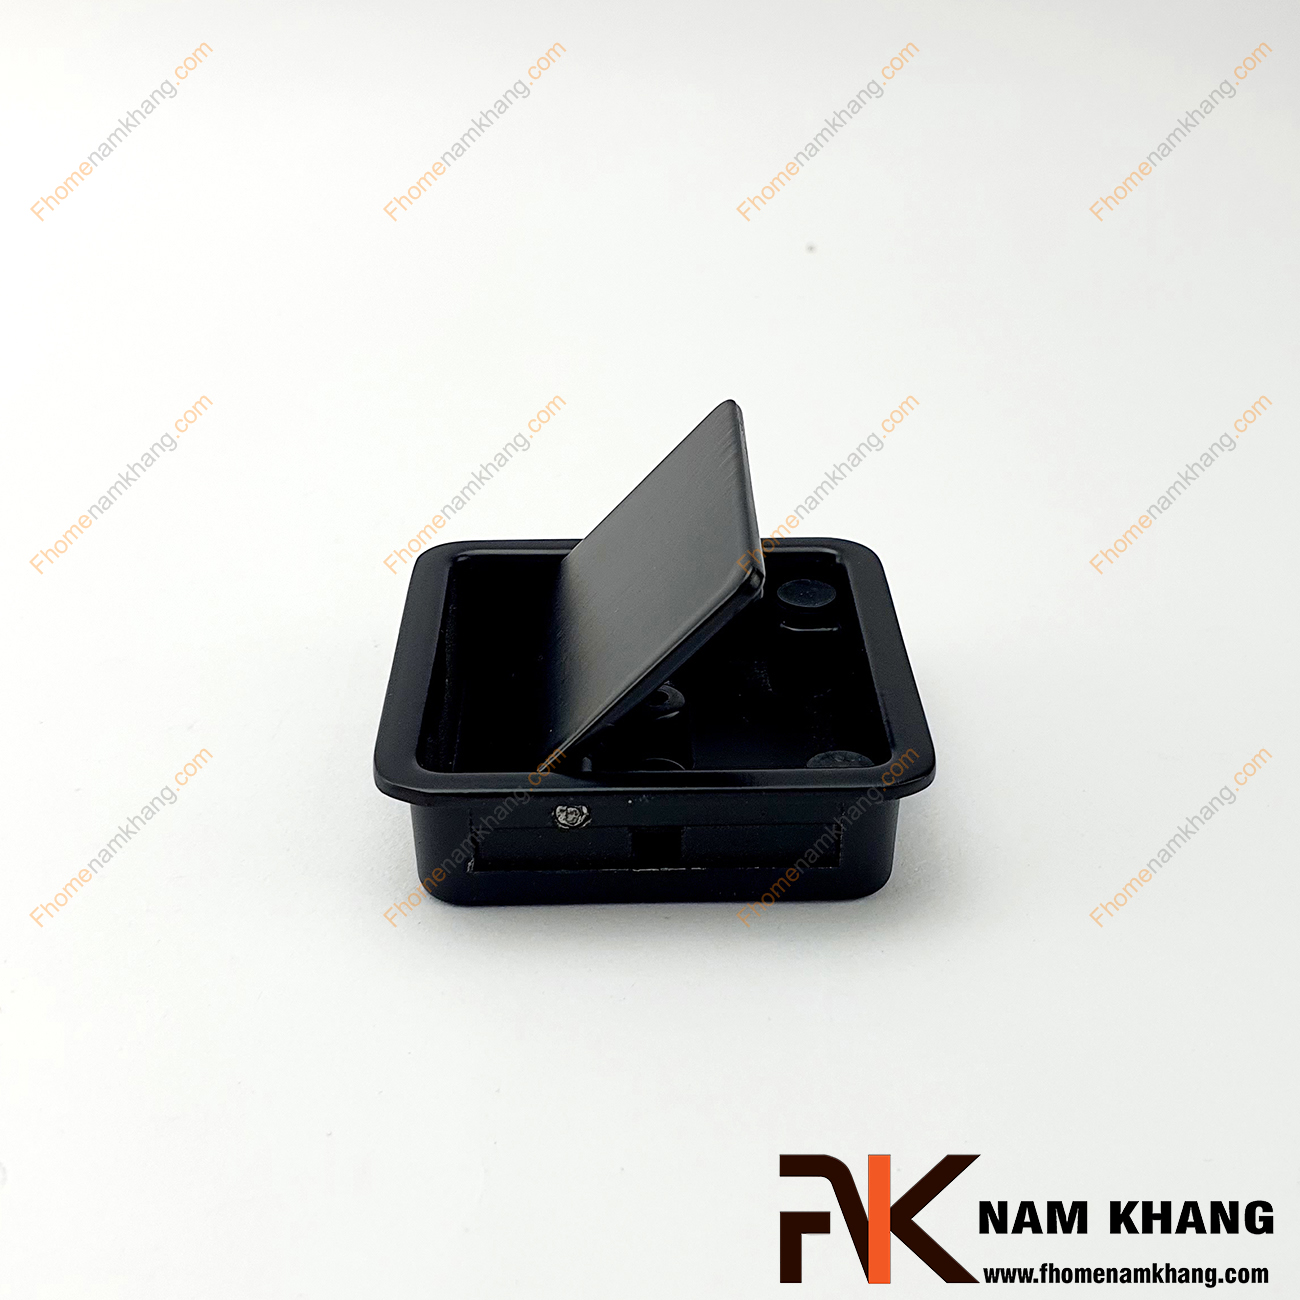 Núm âm tủ dạng vuông trơn màu đen NK237-D chuyên dùng cho các loại tủ đặt ở những nơi có không gian hạn chế hoặc dùng để nâng cao tính thẫm mỹ của sản phẩm